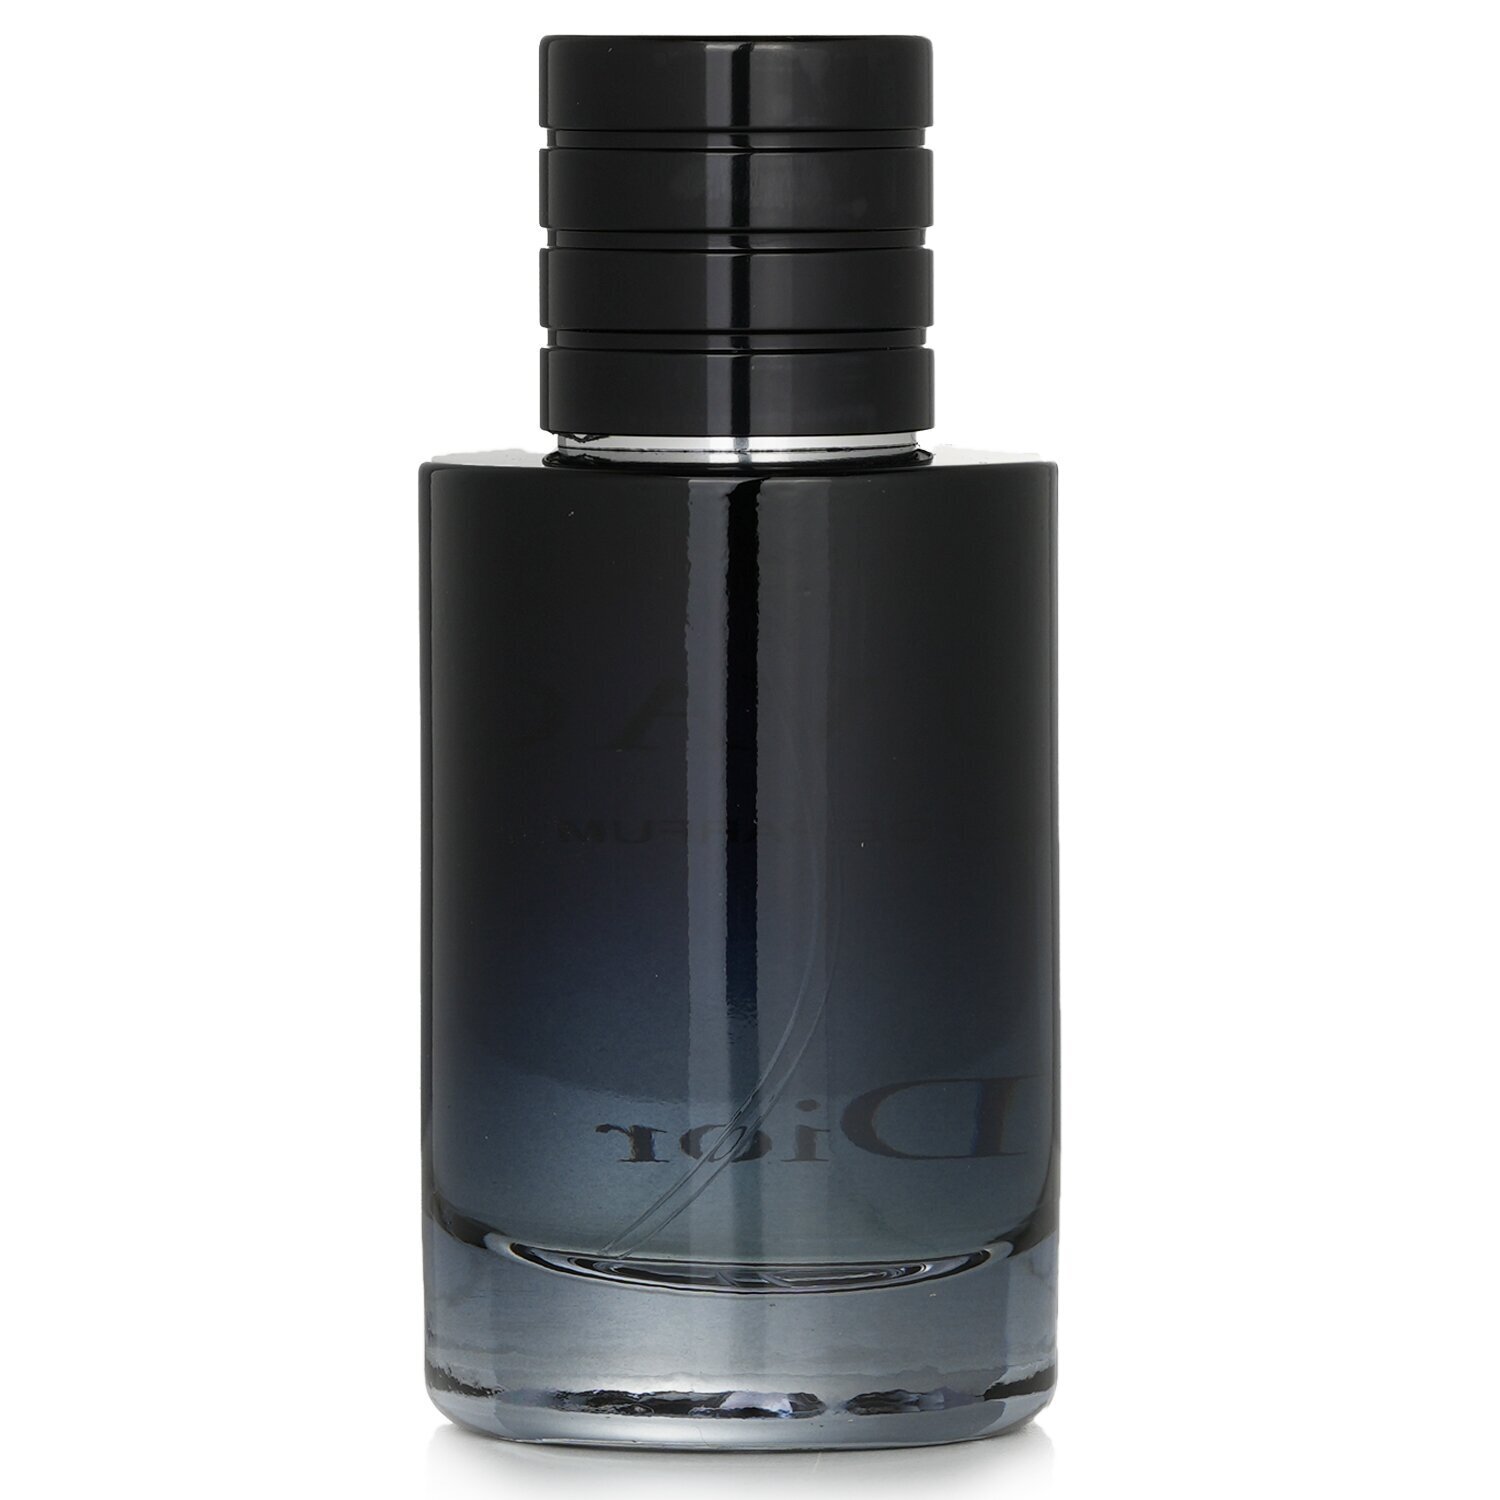 Christian Dior Sauvage Eau De Parfum Spray 60ml/2oz